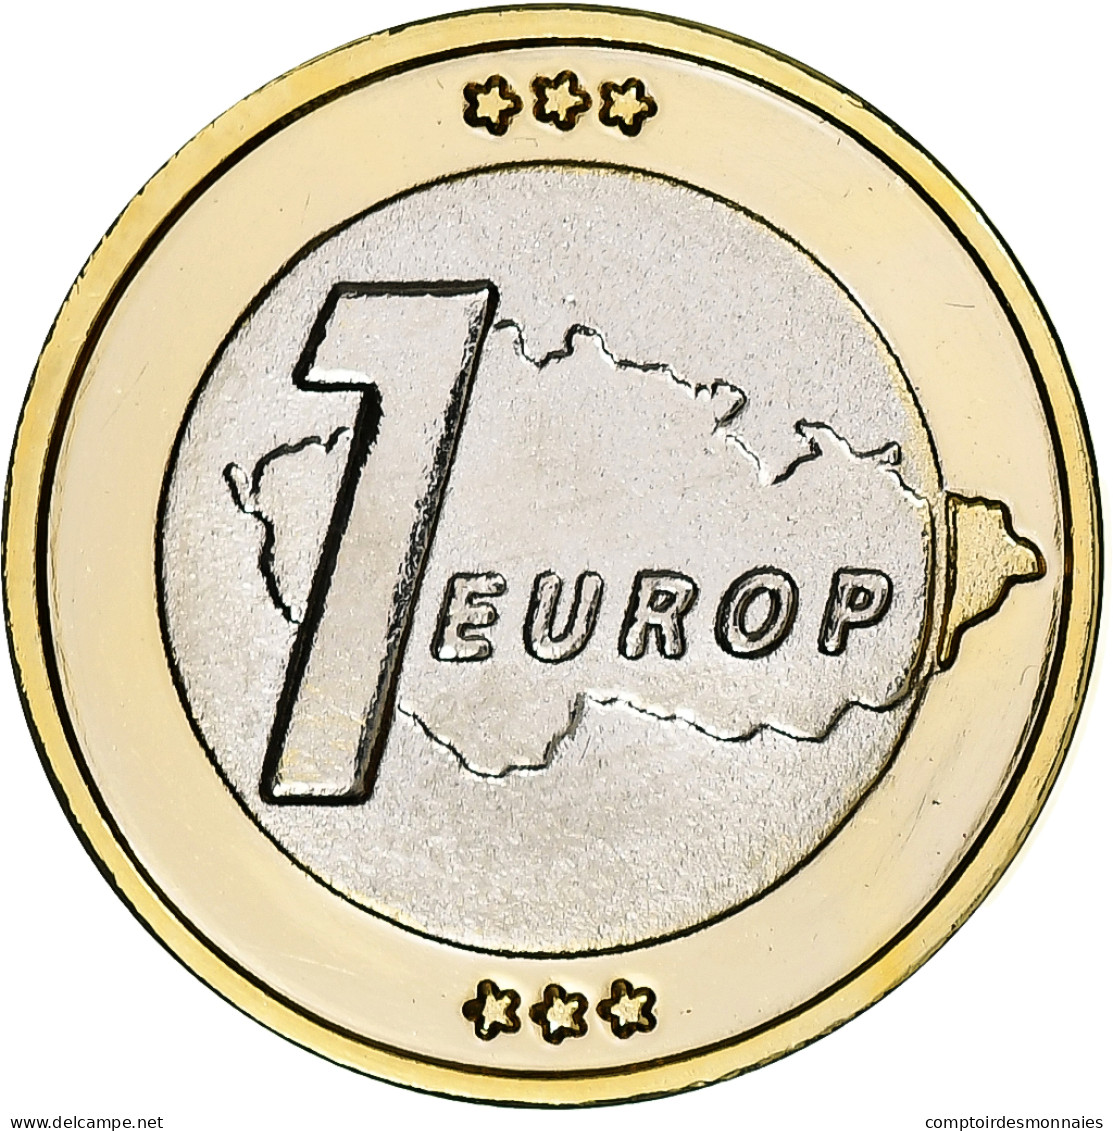 République Tchèque, Euro, Fantasy Euro Patterns, Essai-Trial, BE, 2004 - Prove Private